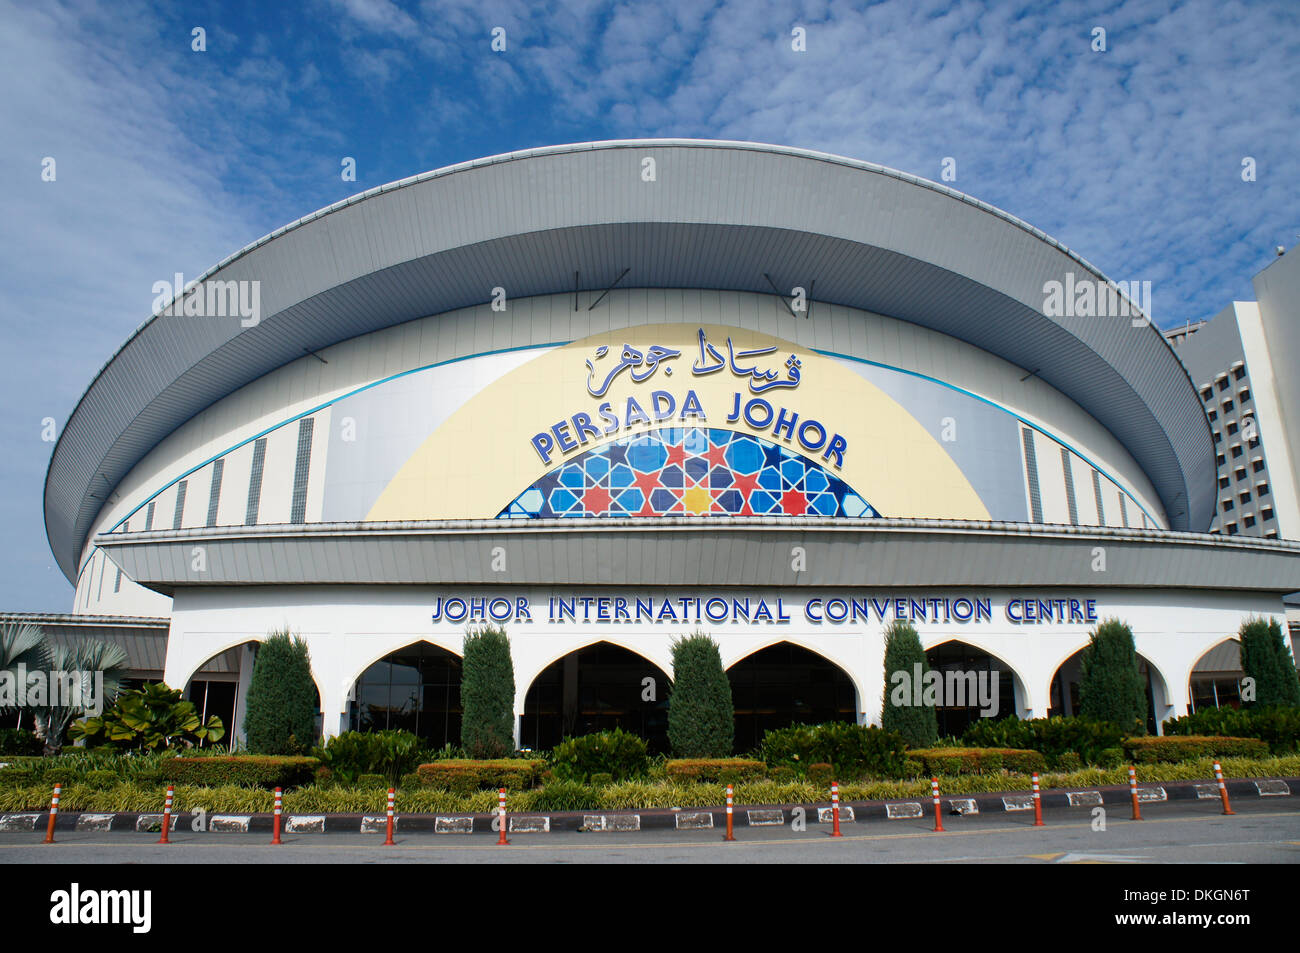 Persada johor international convention centre